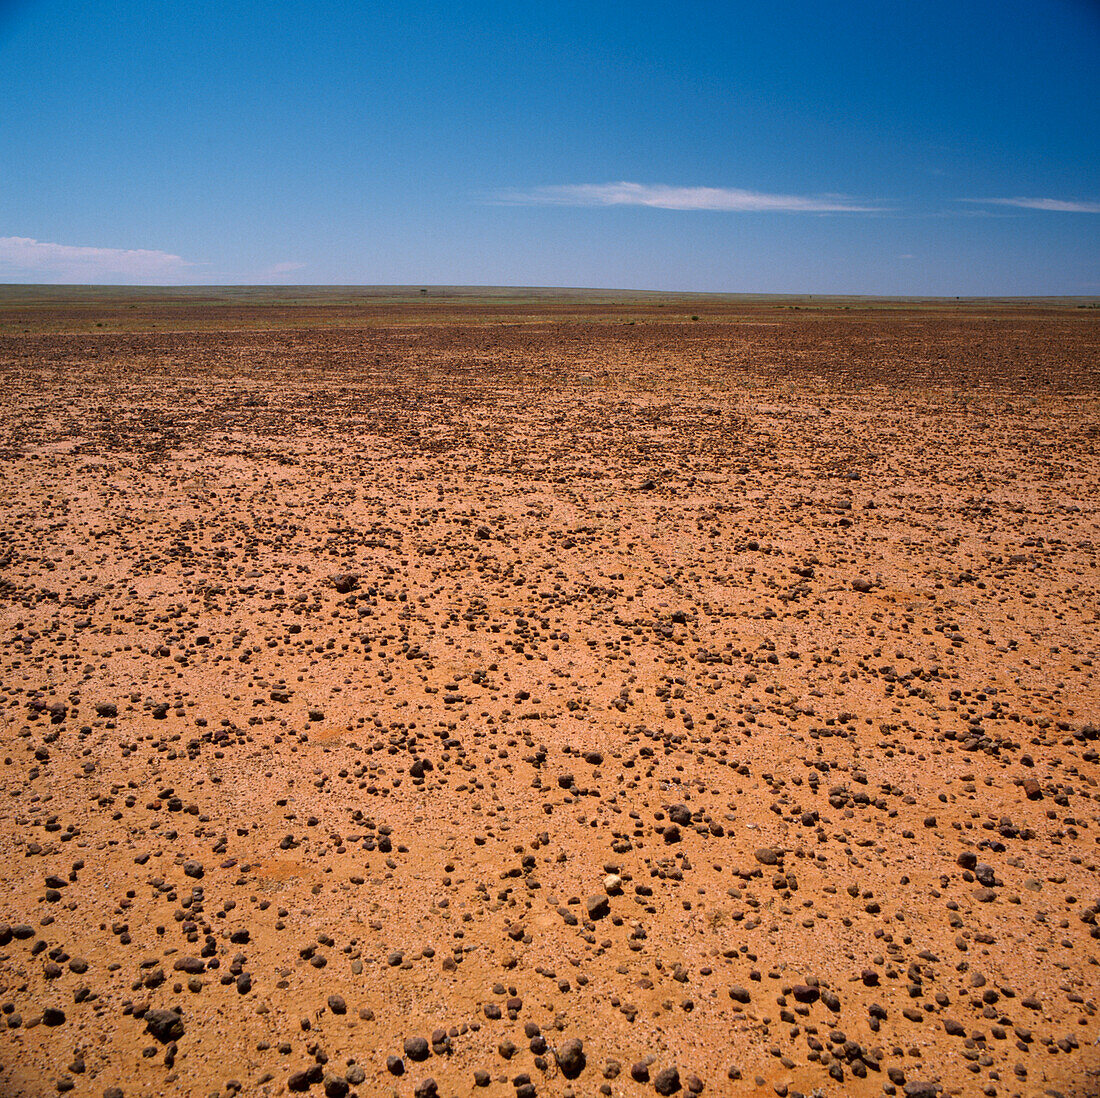 Sturt Stoney Desert, Australia